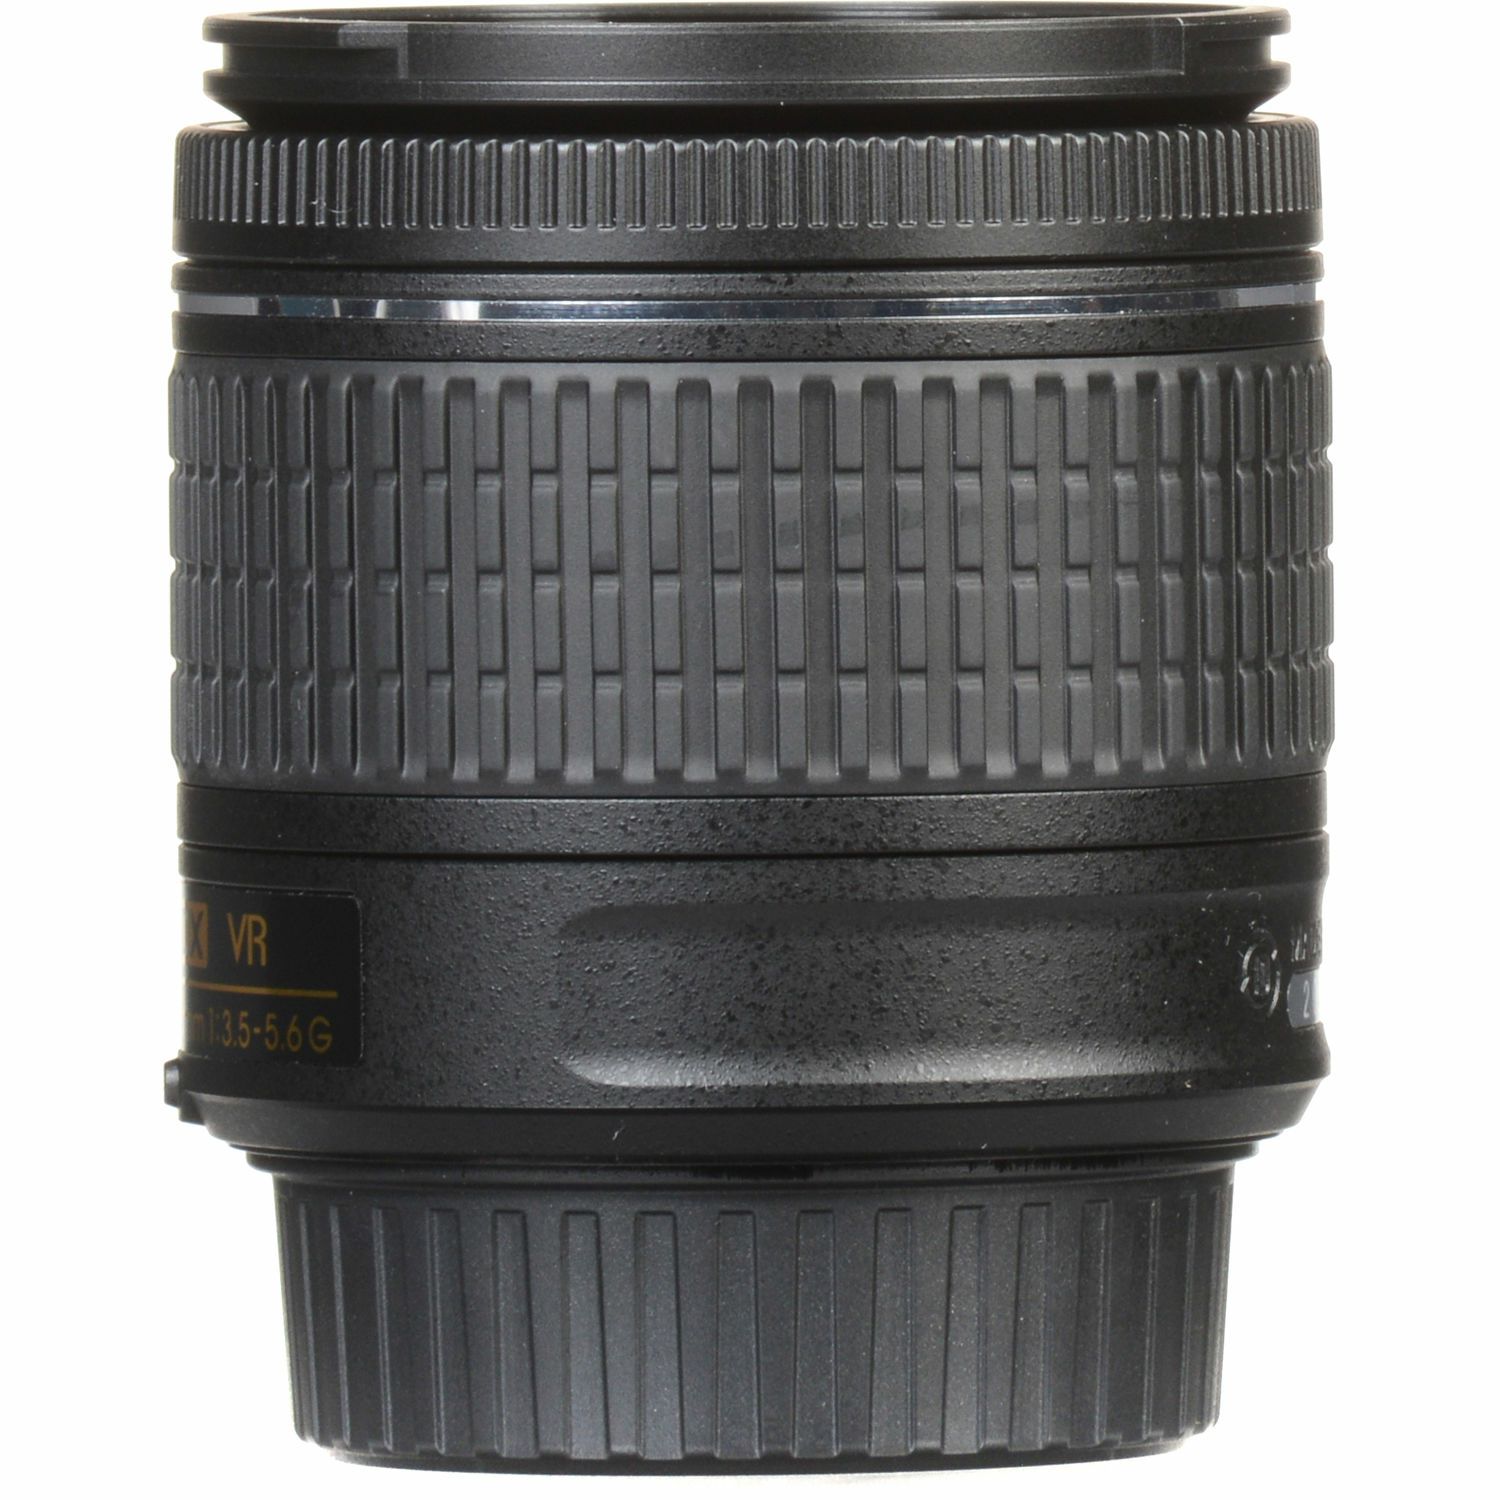 Nikon D3500 + AF-P 18-55 f/3.5-5.6 VR DX KIT DSLR digitalni fotoaparat i objektiv Nikkor 18-55mm (VBA550K001)